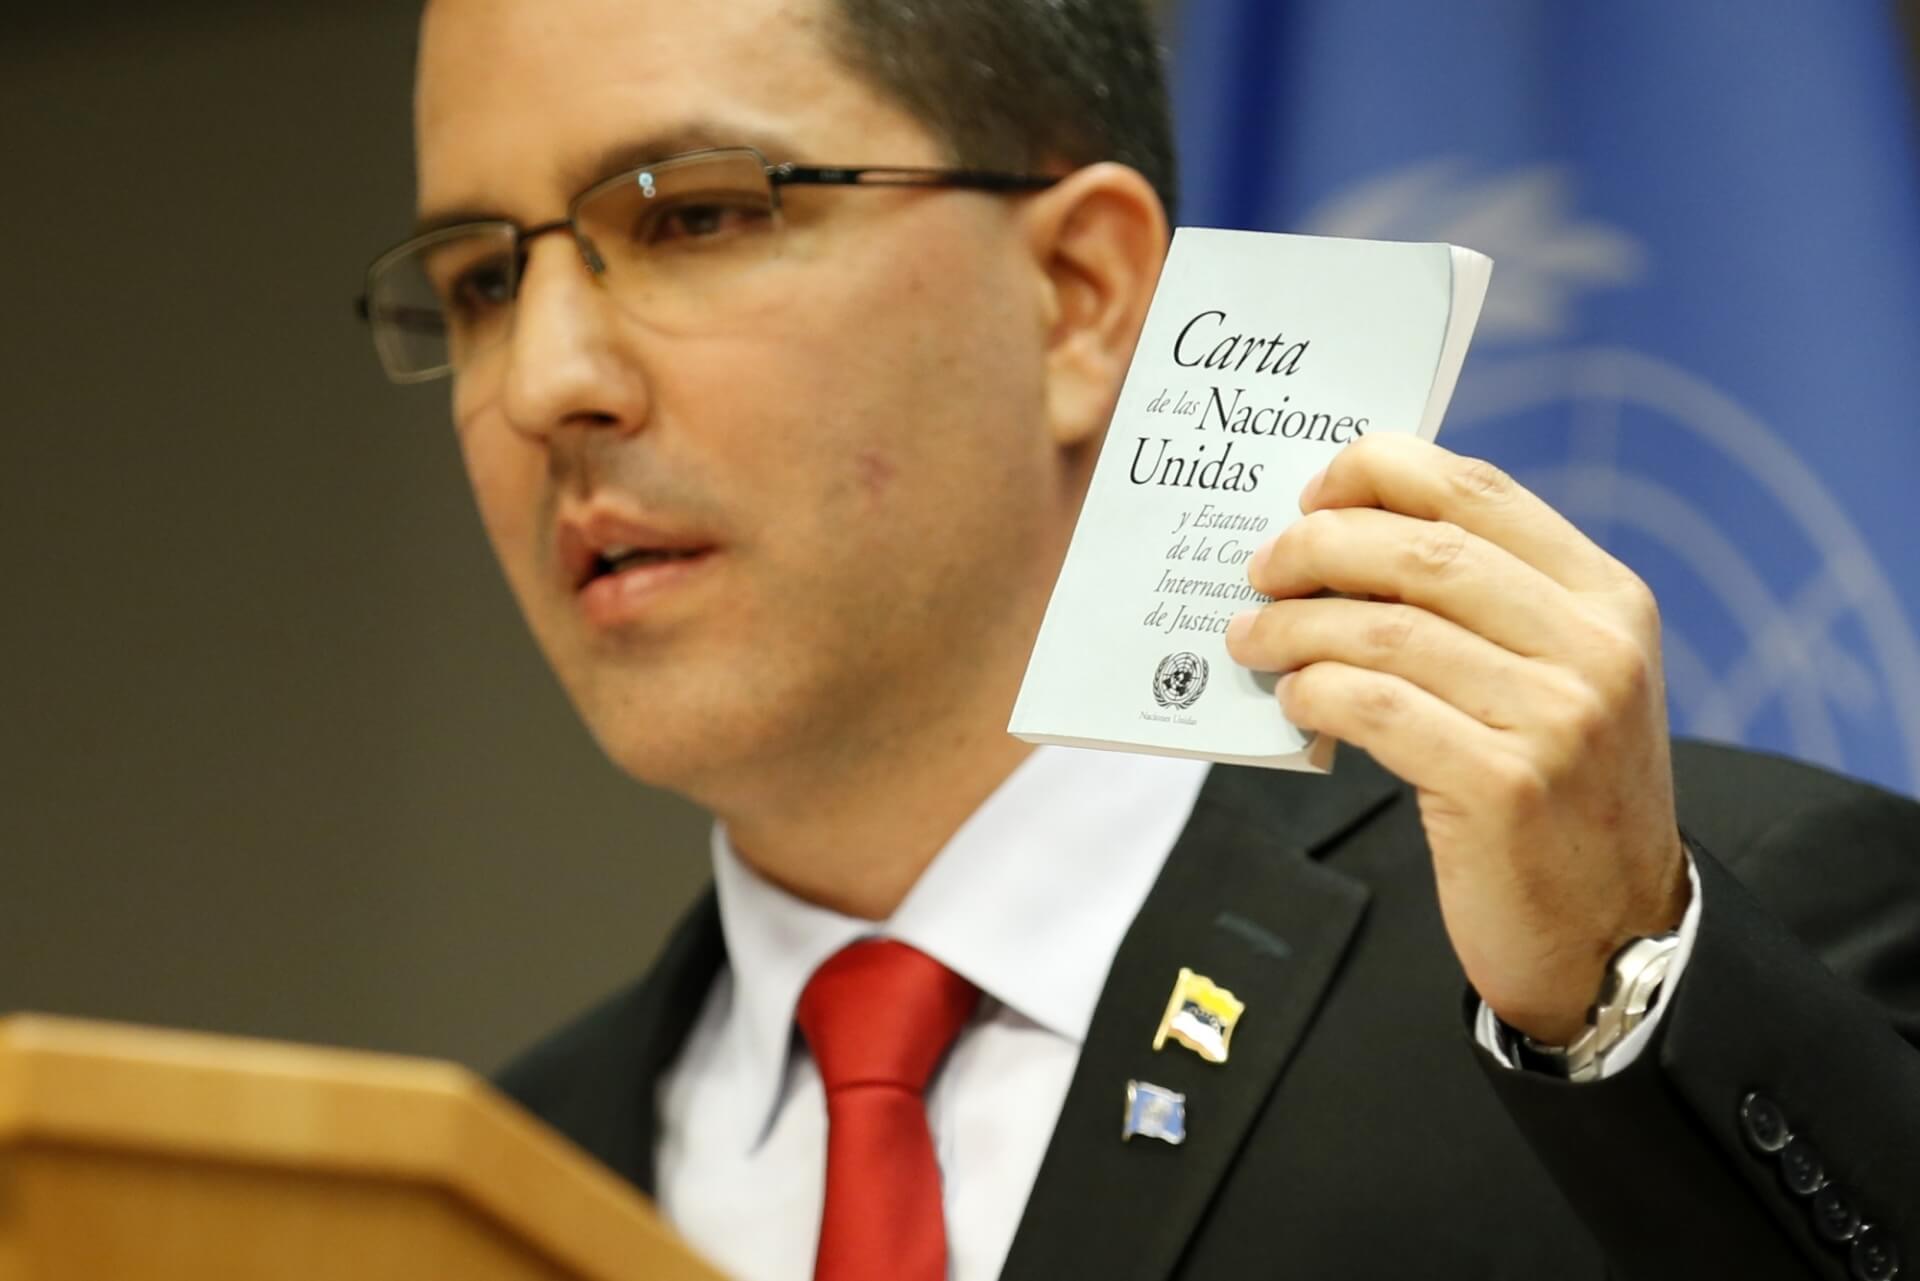 Venezuela Denounces US Sanctions, Seeks ICC Probe Into “Crimes Against Humanity”